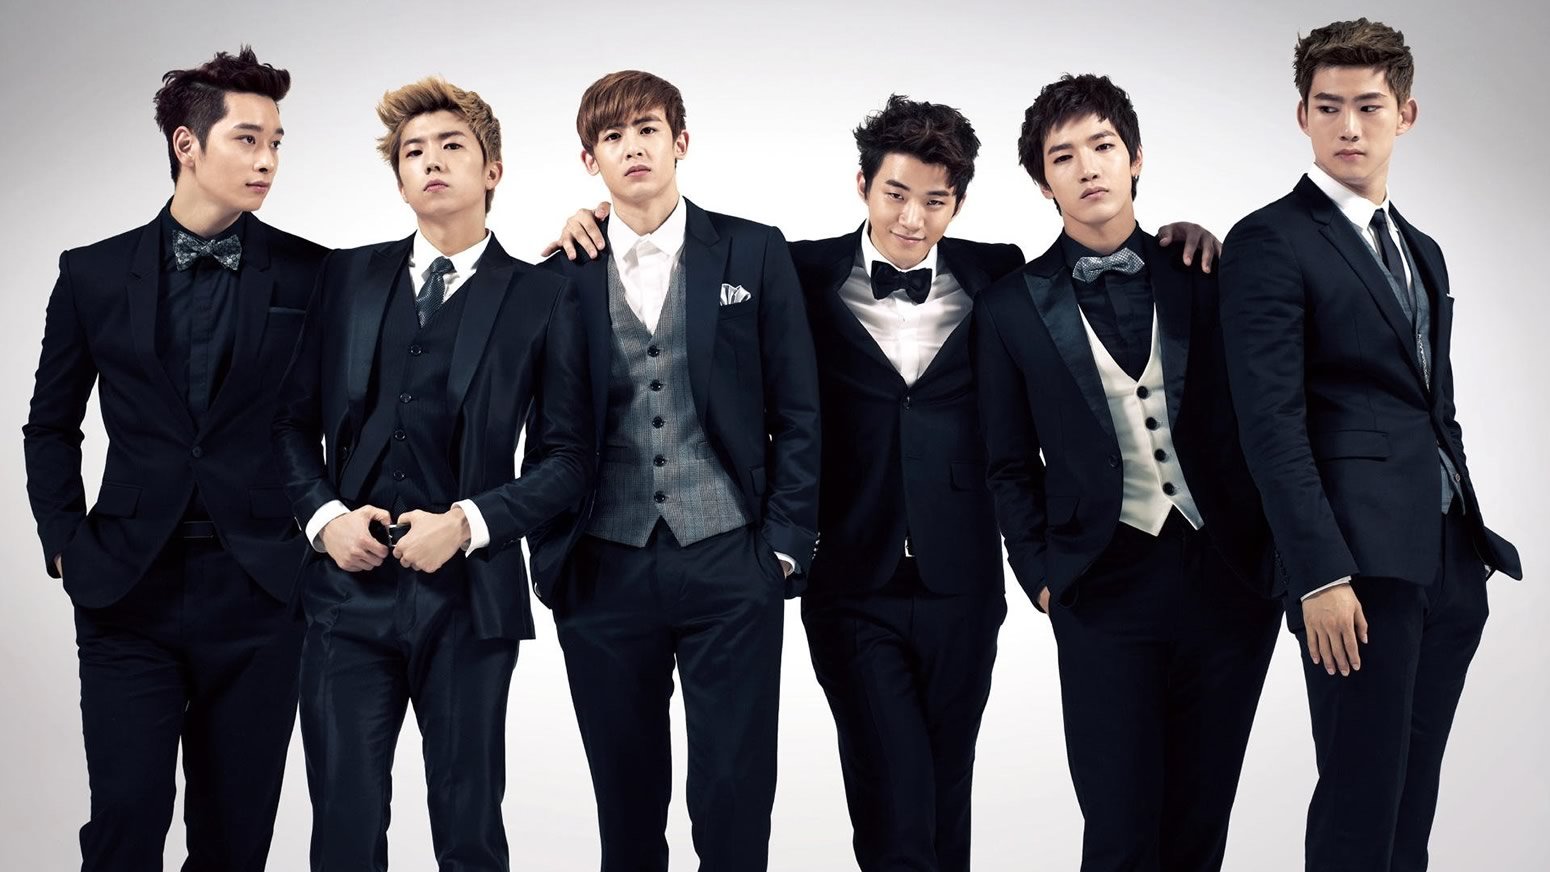 Lee Junho | Conheça o Grupo K-Pop 2PM formado pela JYP Entertainment e sua carreira de sucessos